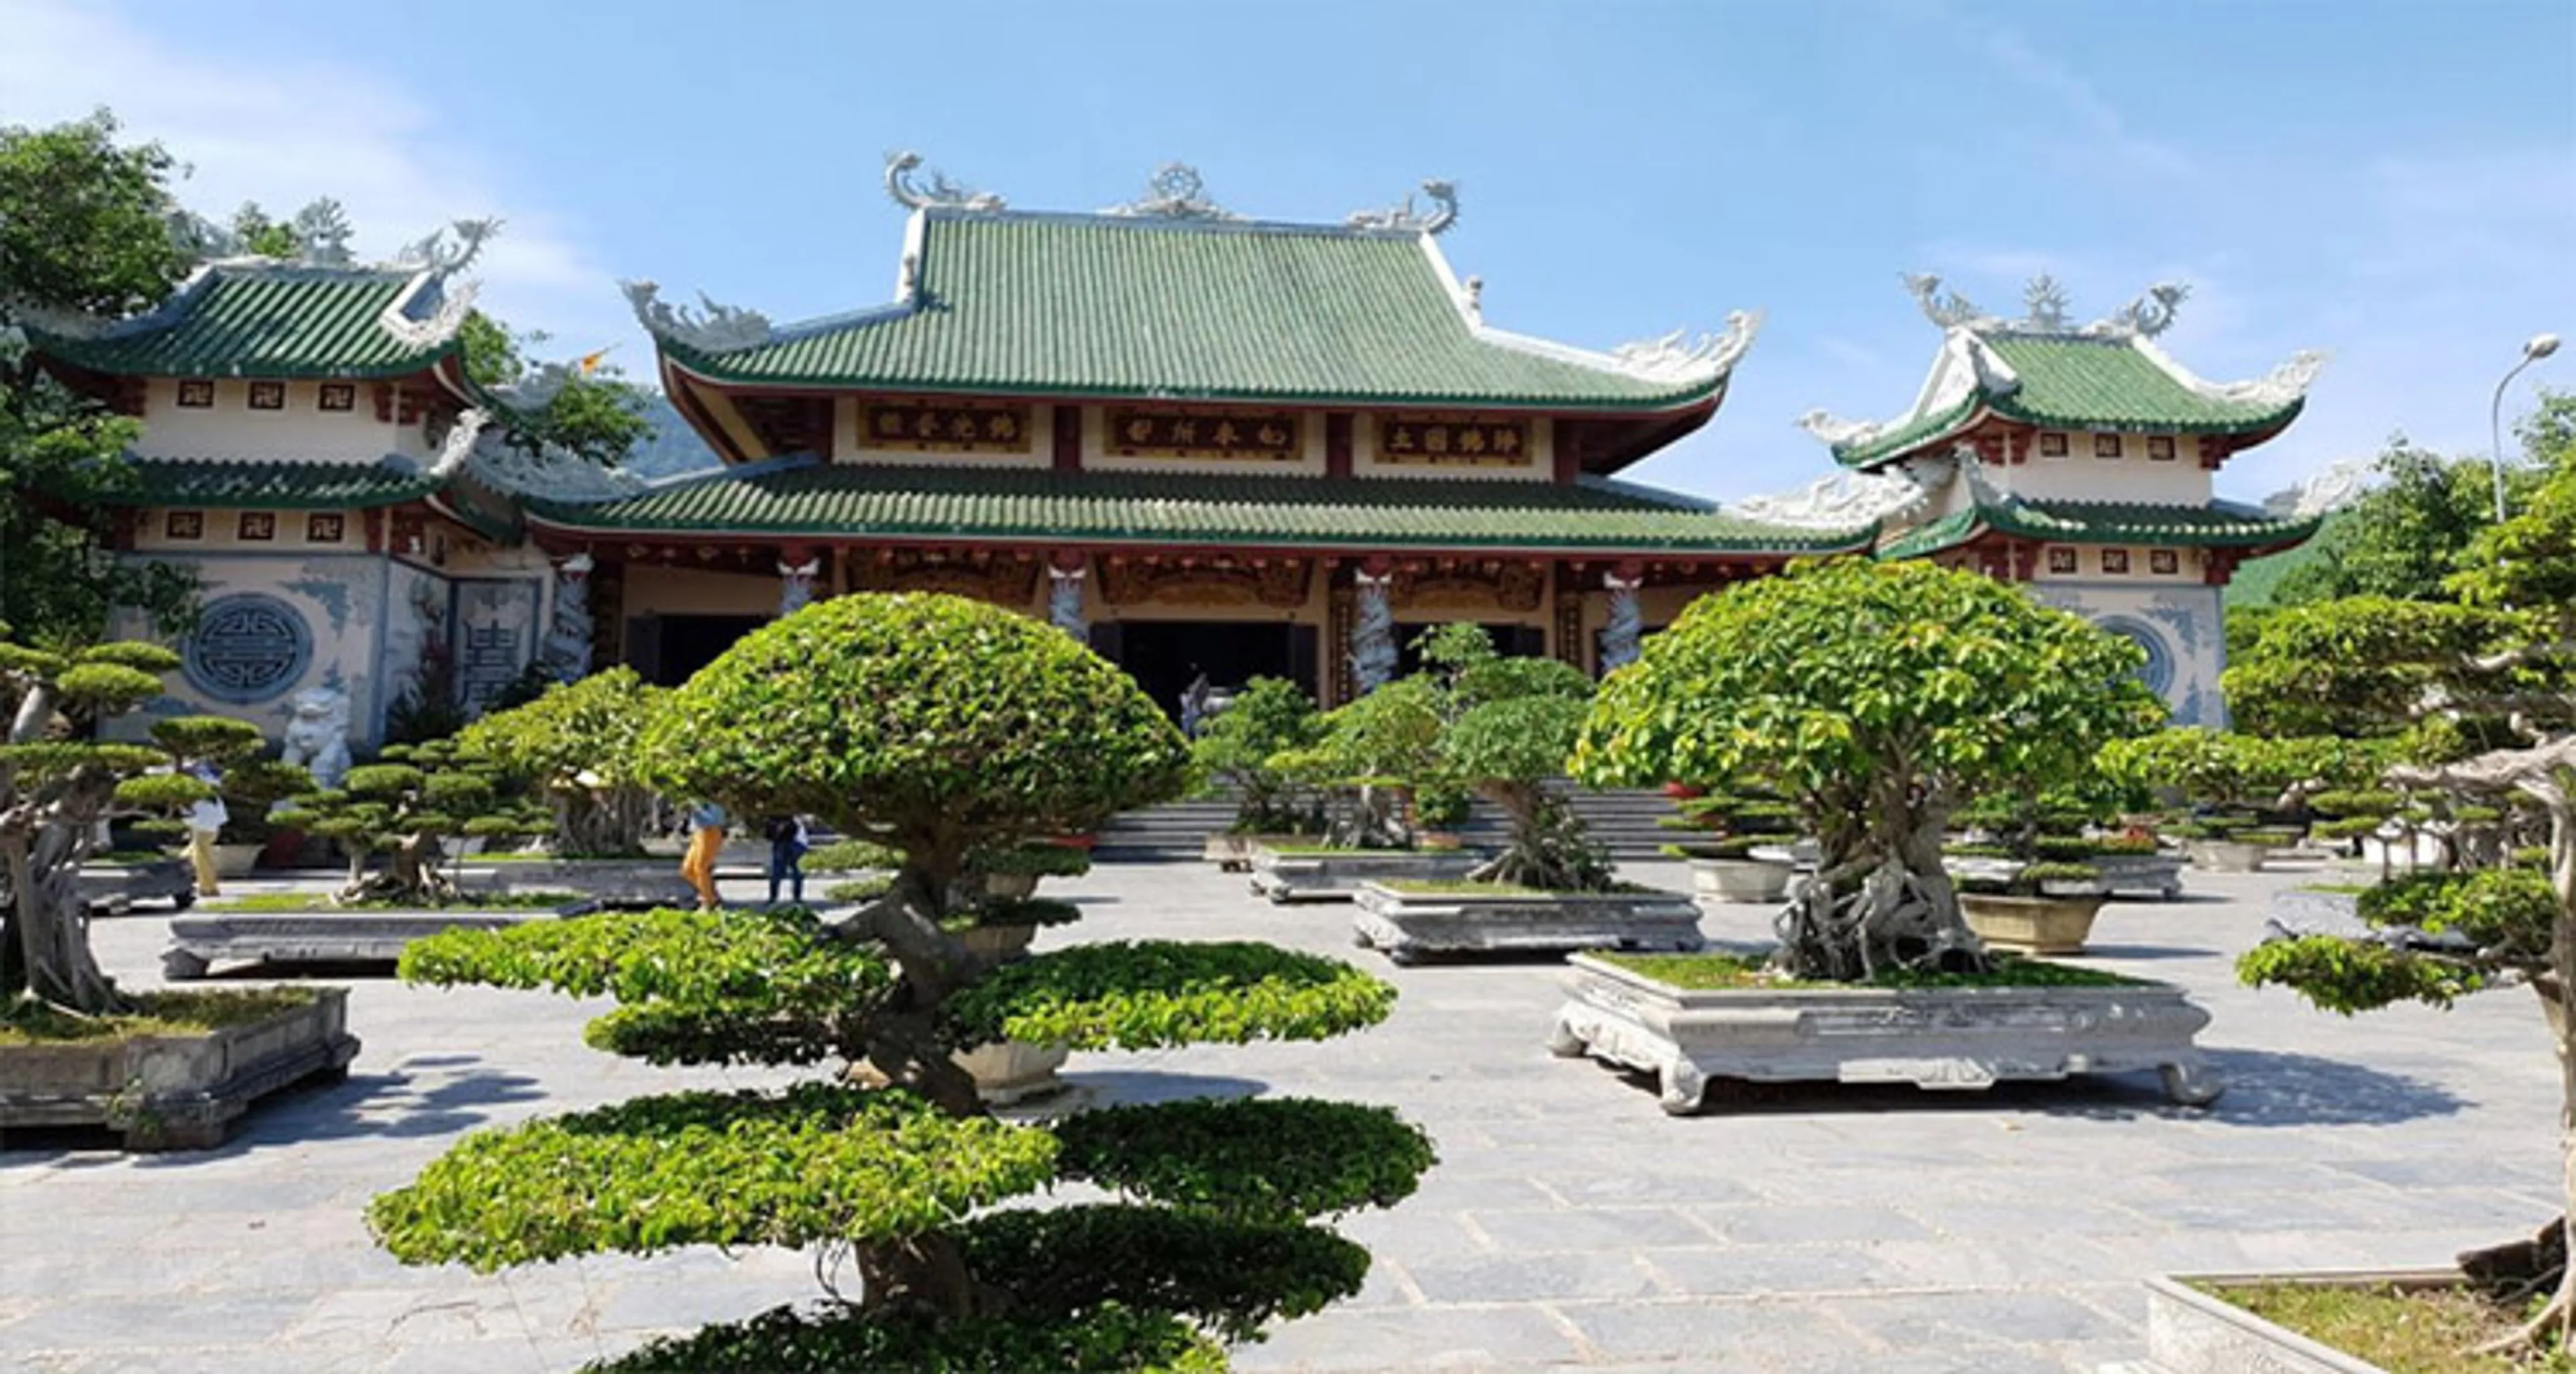 Linh Ung Pagoda Da Nang - spiritual cultural tourism